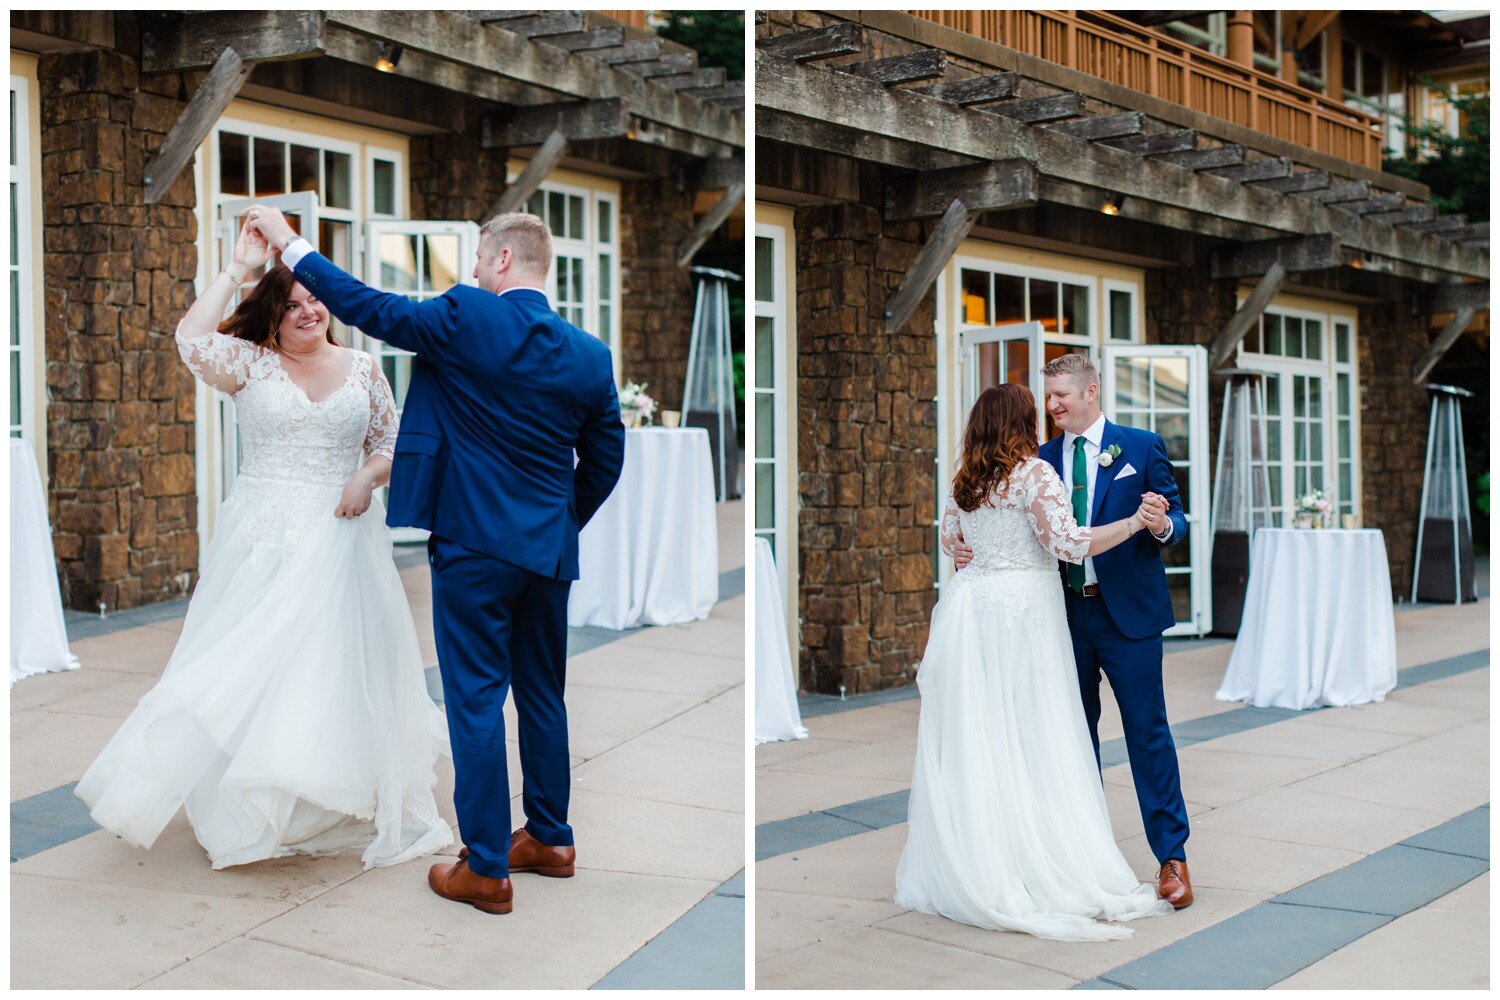 Bride and groom first dance at Alderbrook Resort